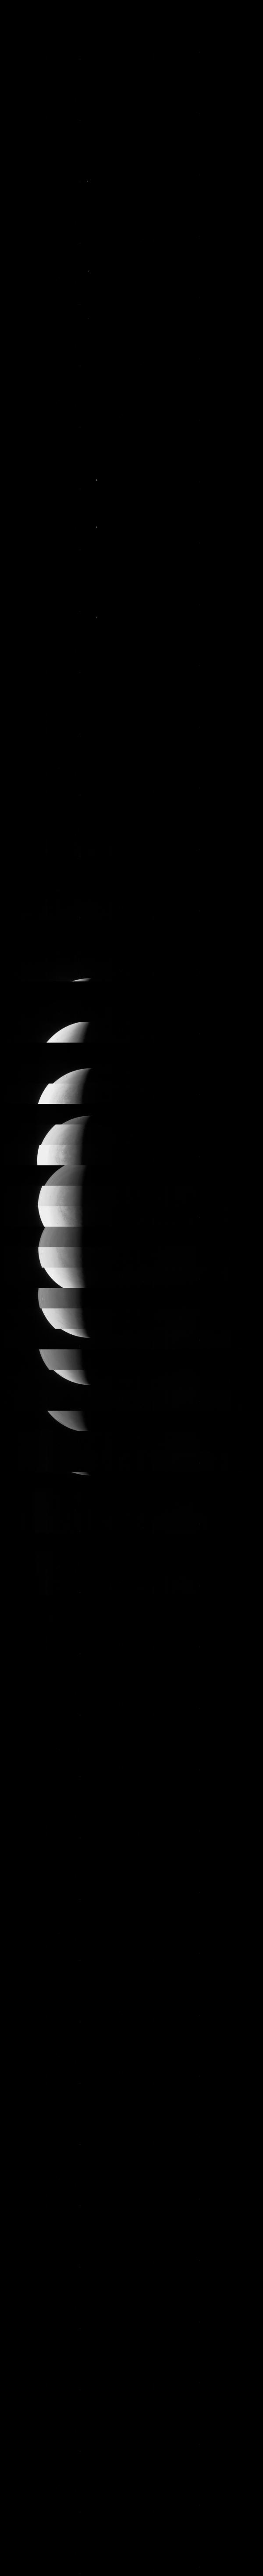 Cải tiến chất lượng ảnh với JunoCam, bạn sẽ có những bức ảnh chất lượng cao về các hành tinh và sao trong khám phá thế giới bí ẩn ngoài vũ trụ. Tham gia vào chuyến phiêu lưu khám phá không gian với Mission Juno và tận hưởng màu sắc sống động và tuyệt đẹp của ảnh qua JunoCam.